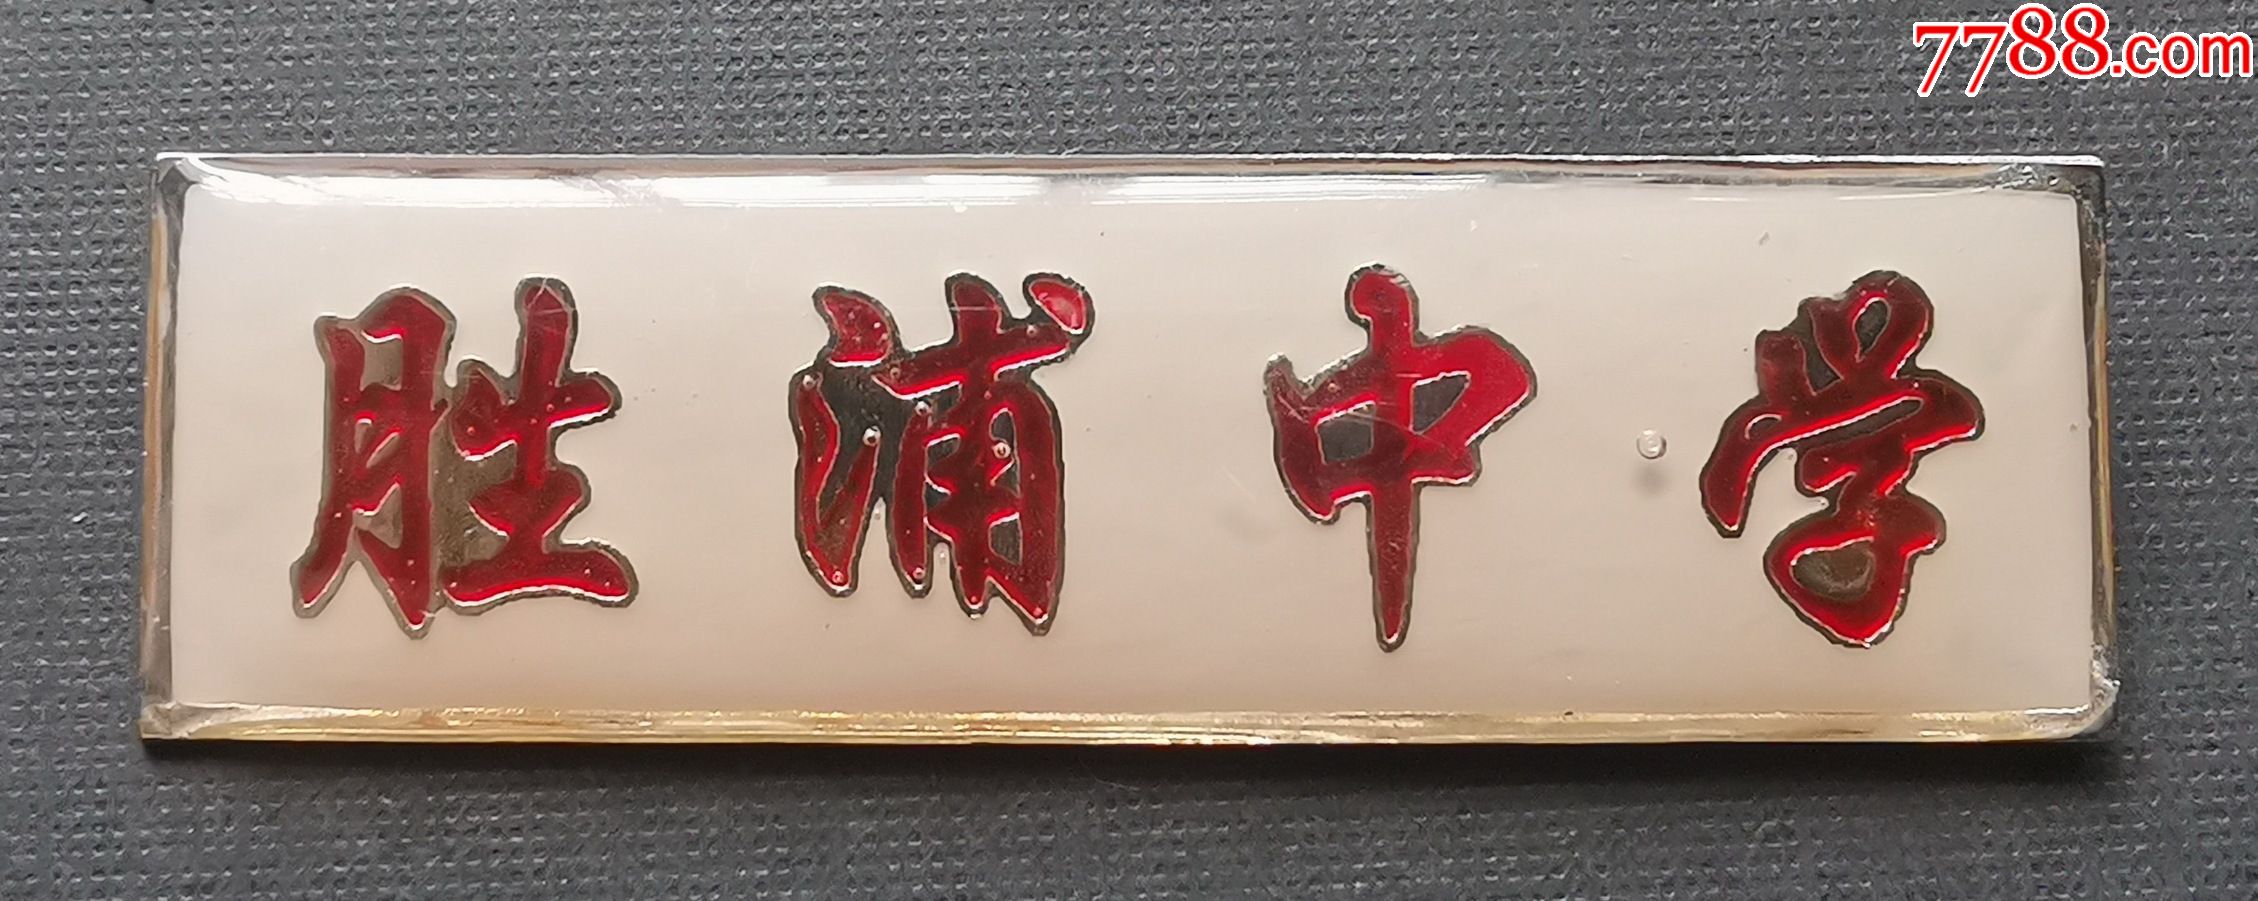 苏州"胜浦中学"校徽,铝质,品相好,长5厘米,宽1.5厘米